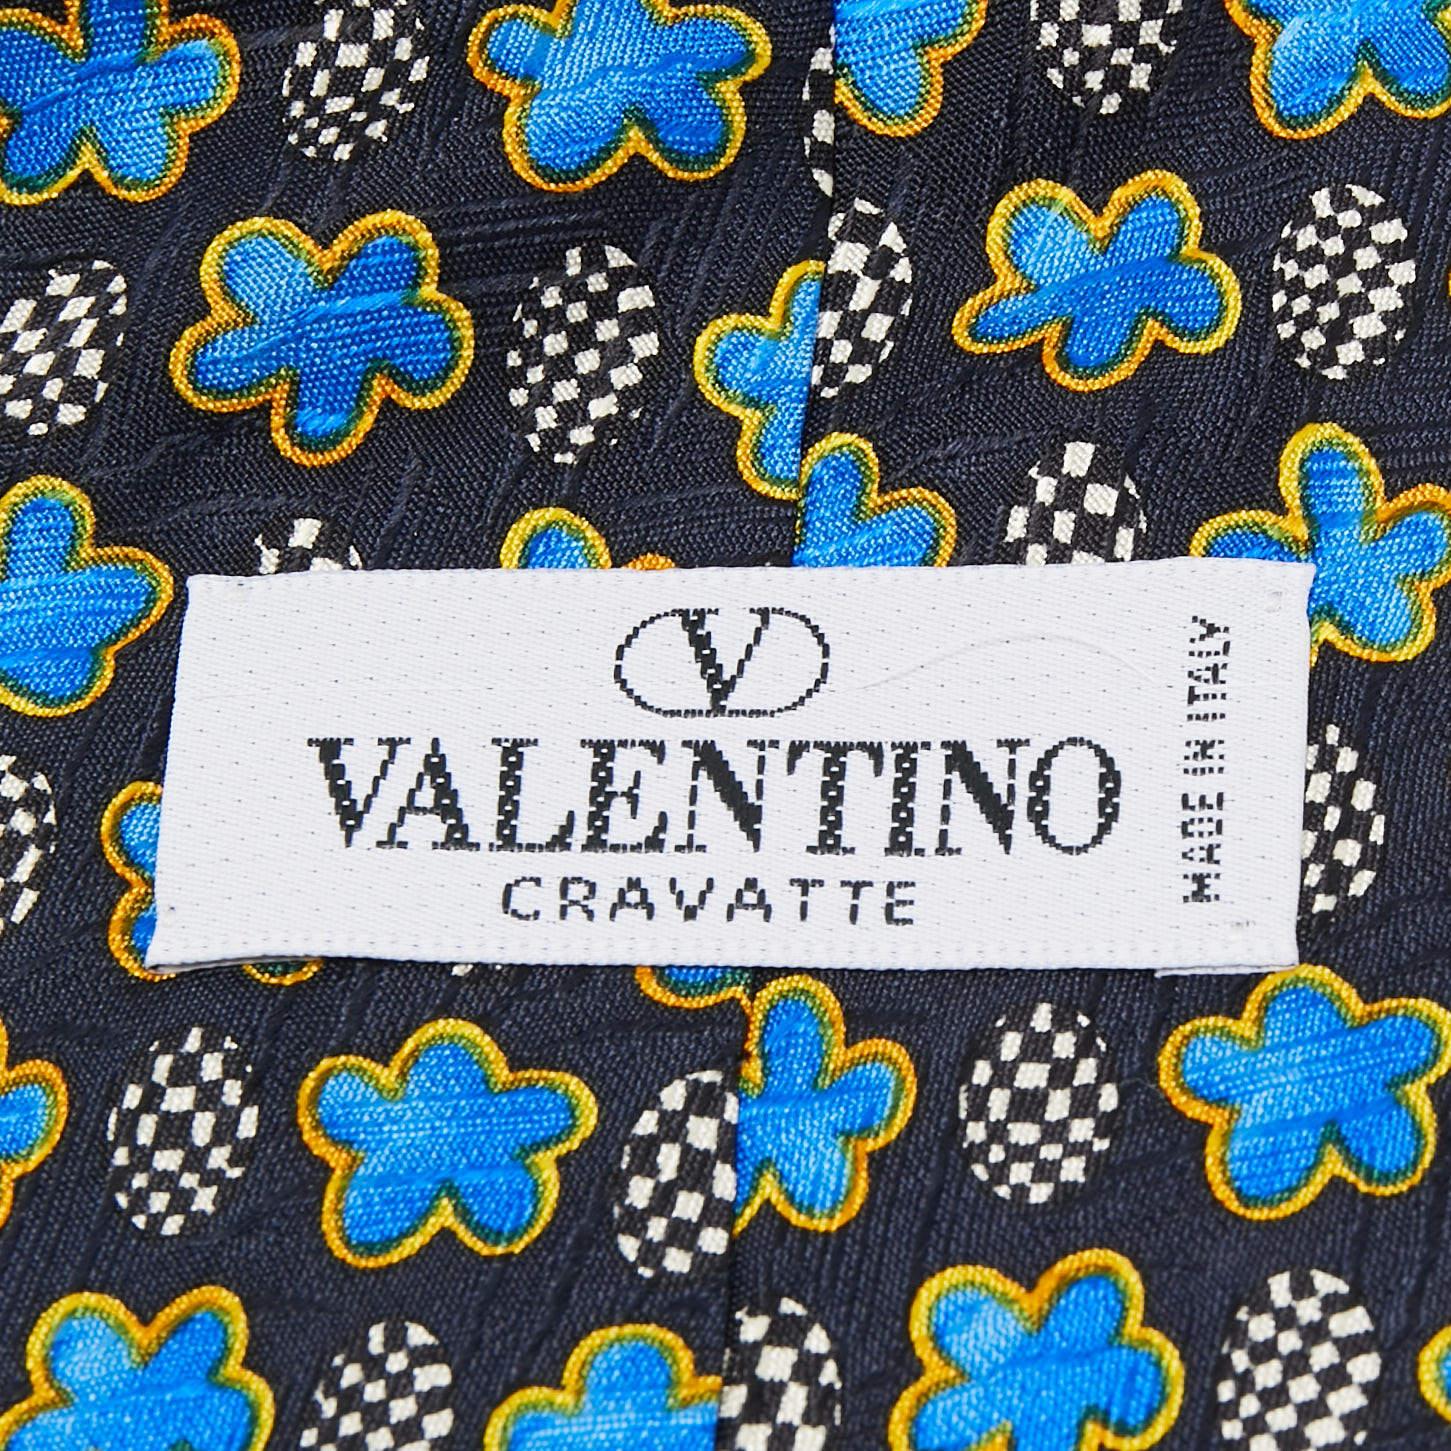 Wählen Sie diese Valentino Krawatte, um Ihrem formellen Look einen Hauch von Luxus zu verleihen. Es ist aus Seide geschnitten und über und über mit Prints versehen. Auf der Rückseite befindet sich das Label der Marke.

Enthält: Marken-Tag,